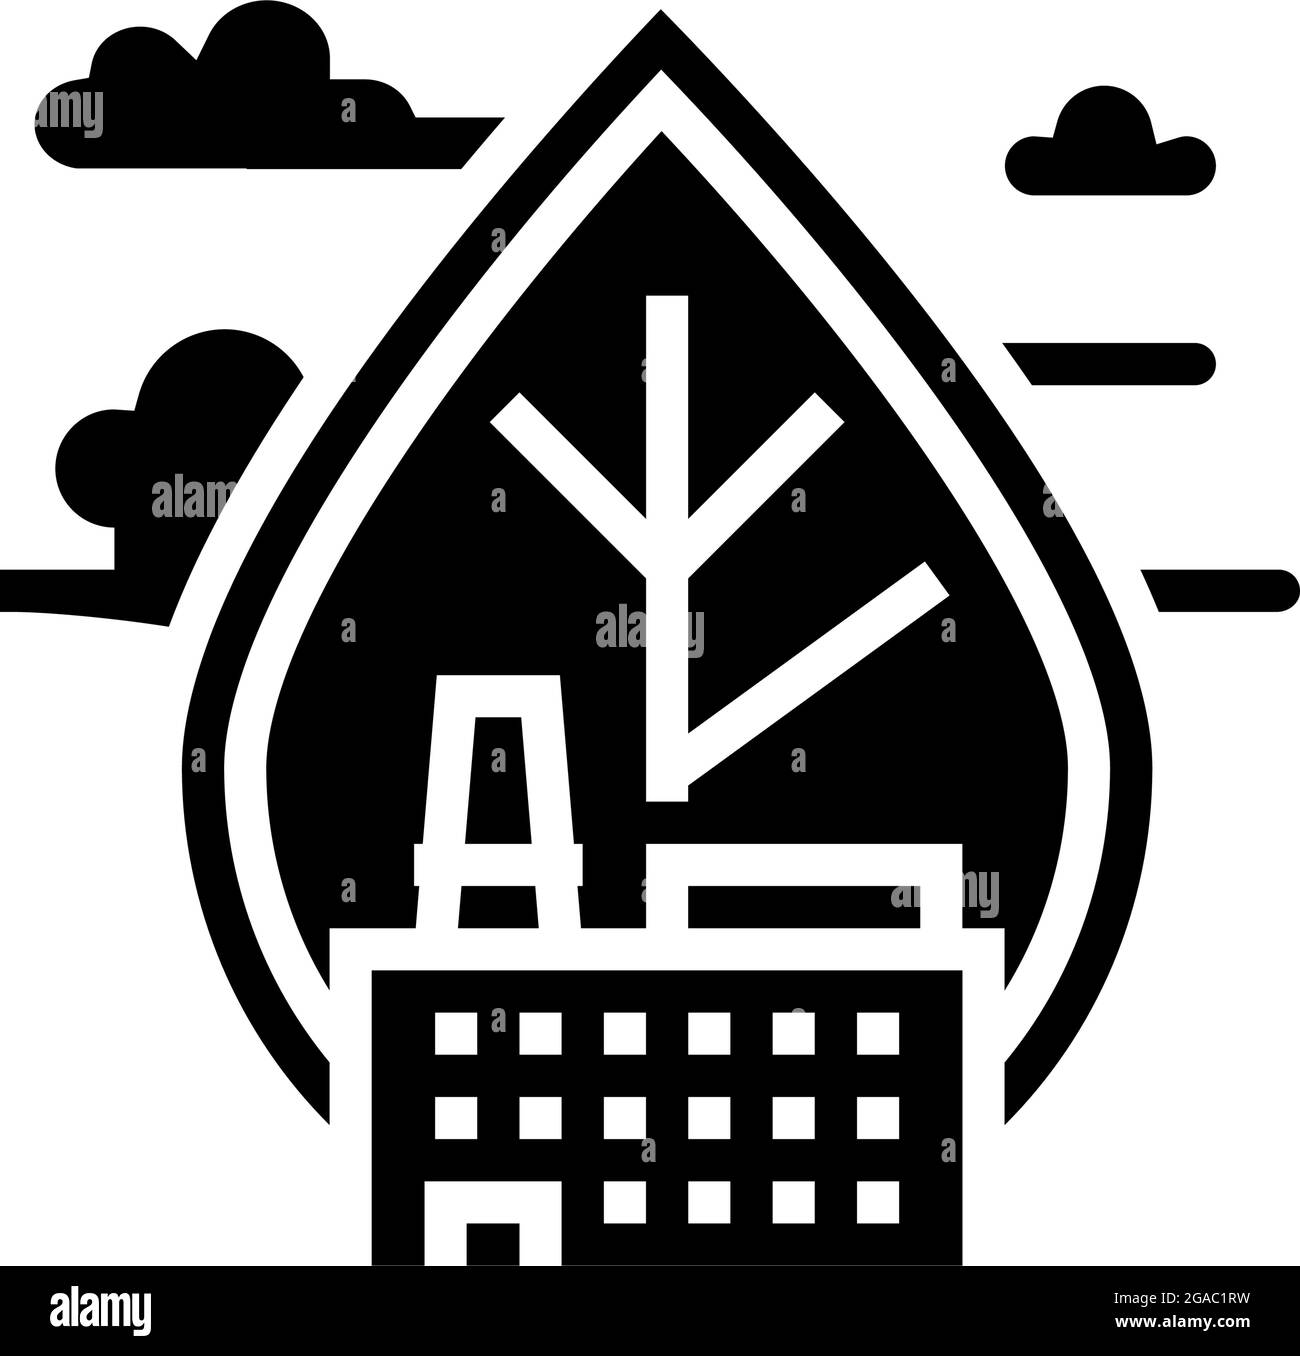 Abbildung mit Glyphen-Symbolen für Luftemissionen und Luftqualität Stock Vektor